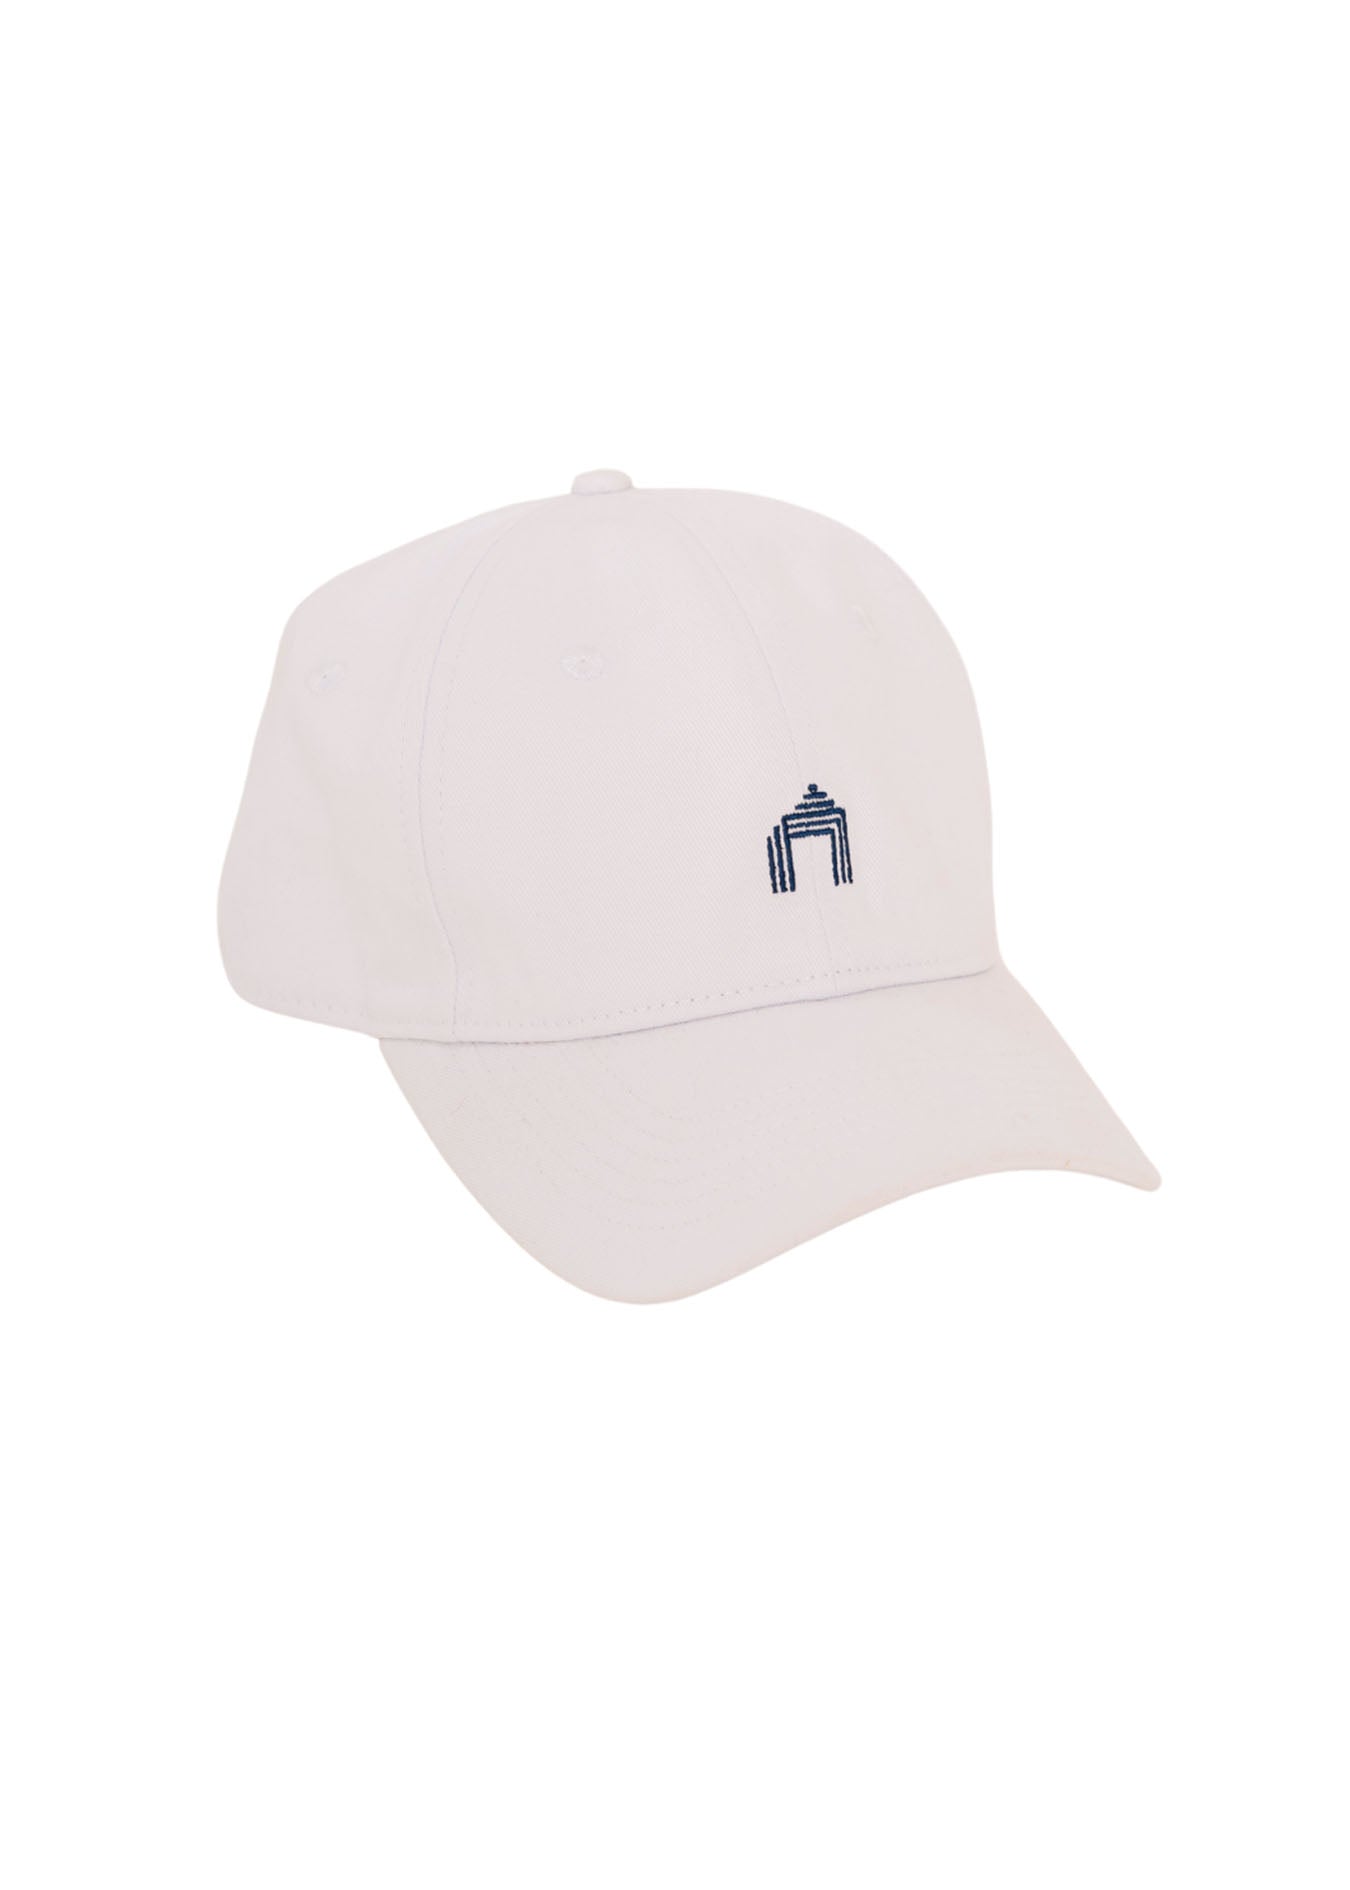 White Cabana Life Baseball Hat on white background